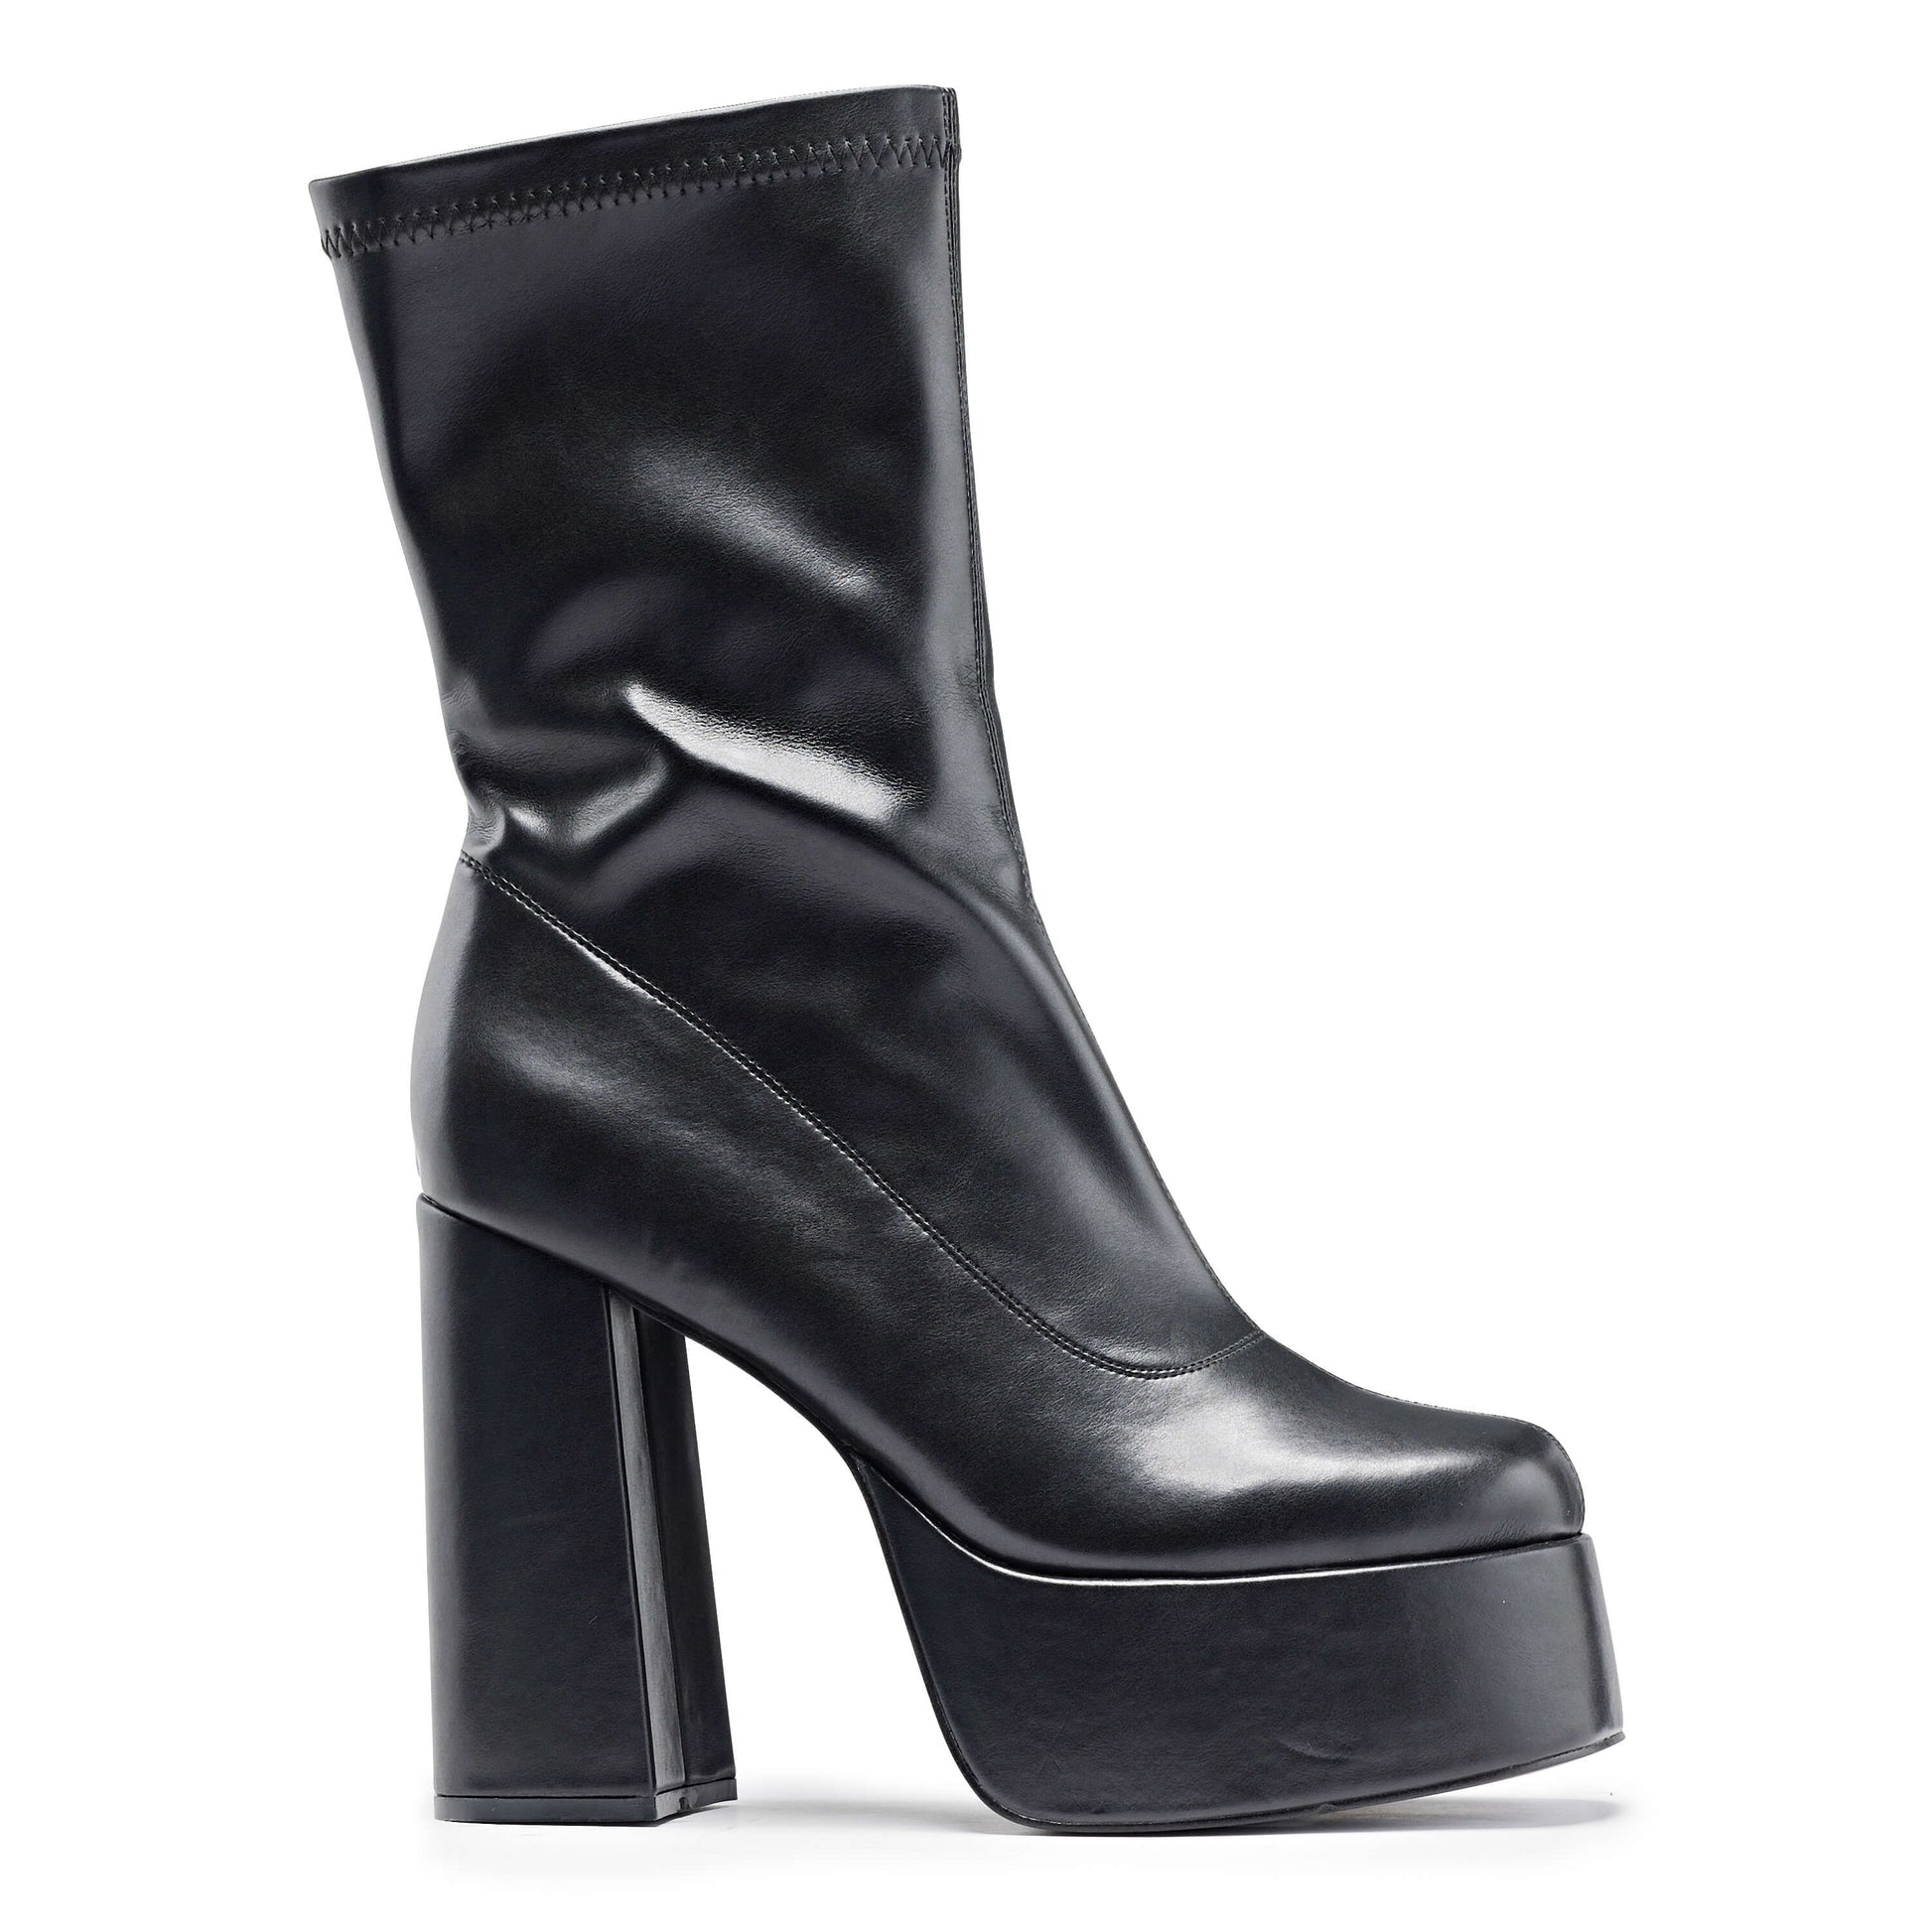 Delano Men's Black Platform Heeled Boots - Ankle Boots - KOI Footwear - Black - Side View